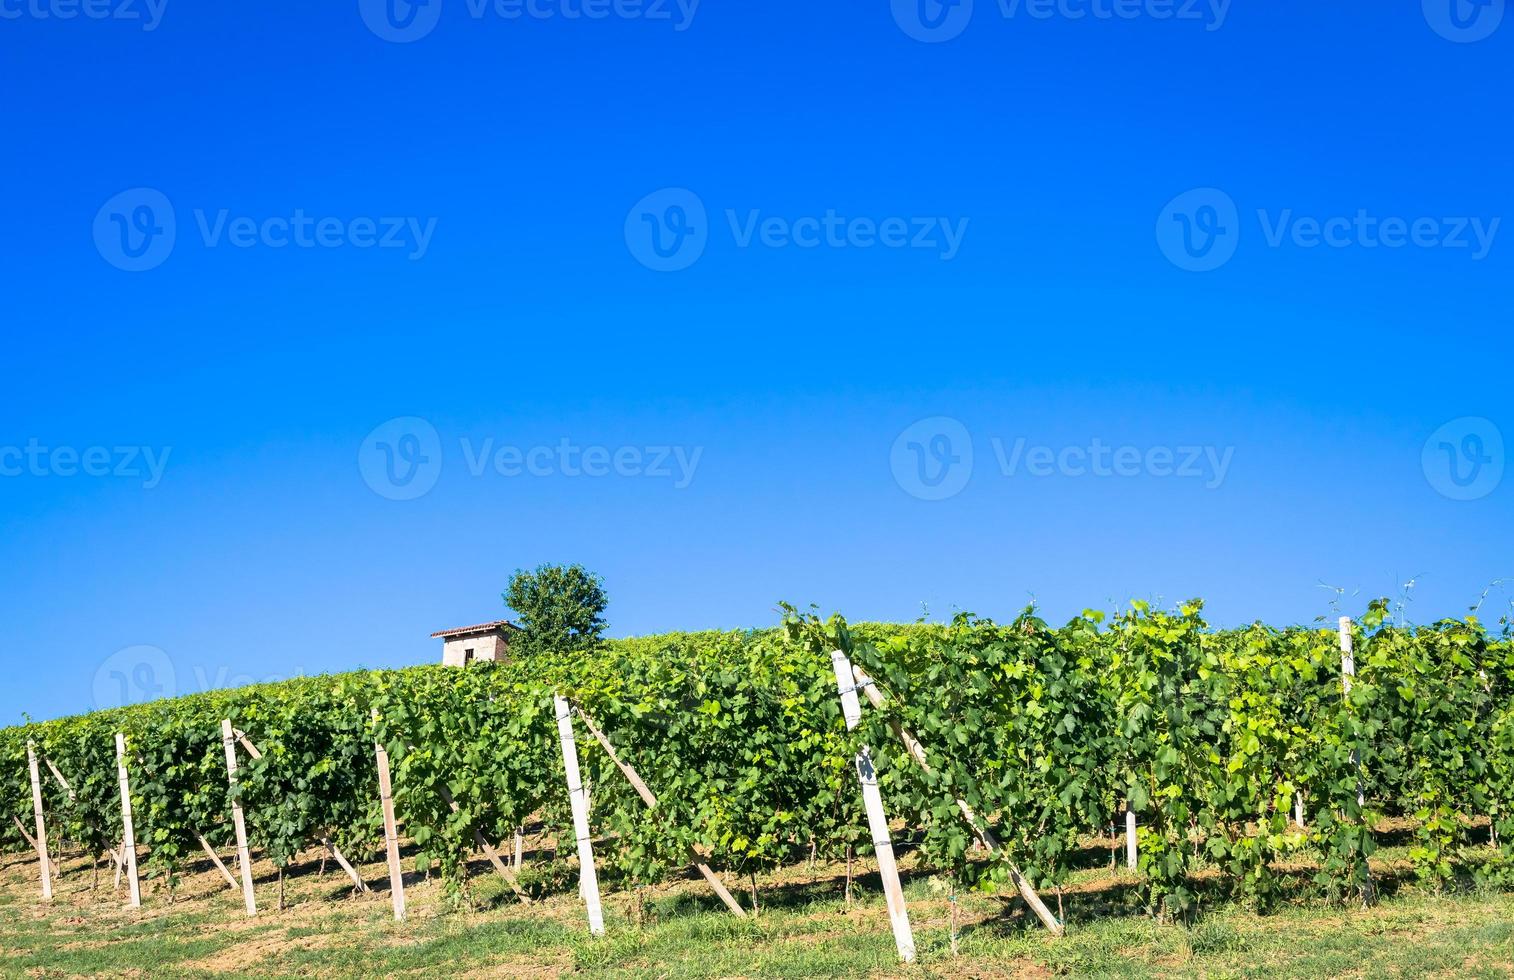 collines du piémont en italie avec campagne pittoresque, vignoble et ciel bleu photo